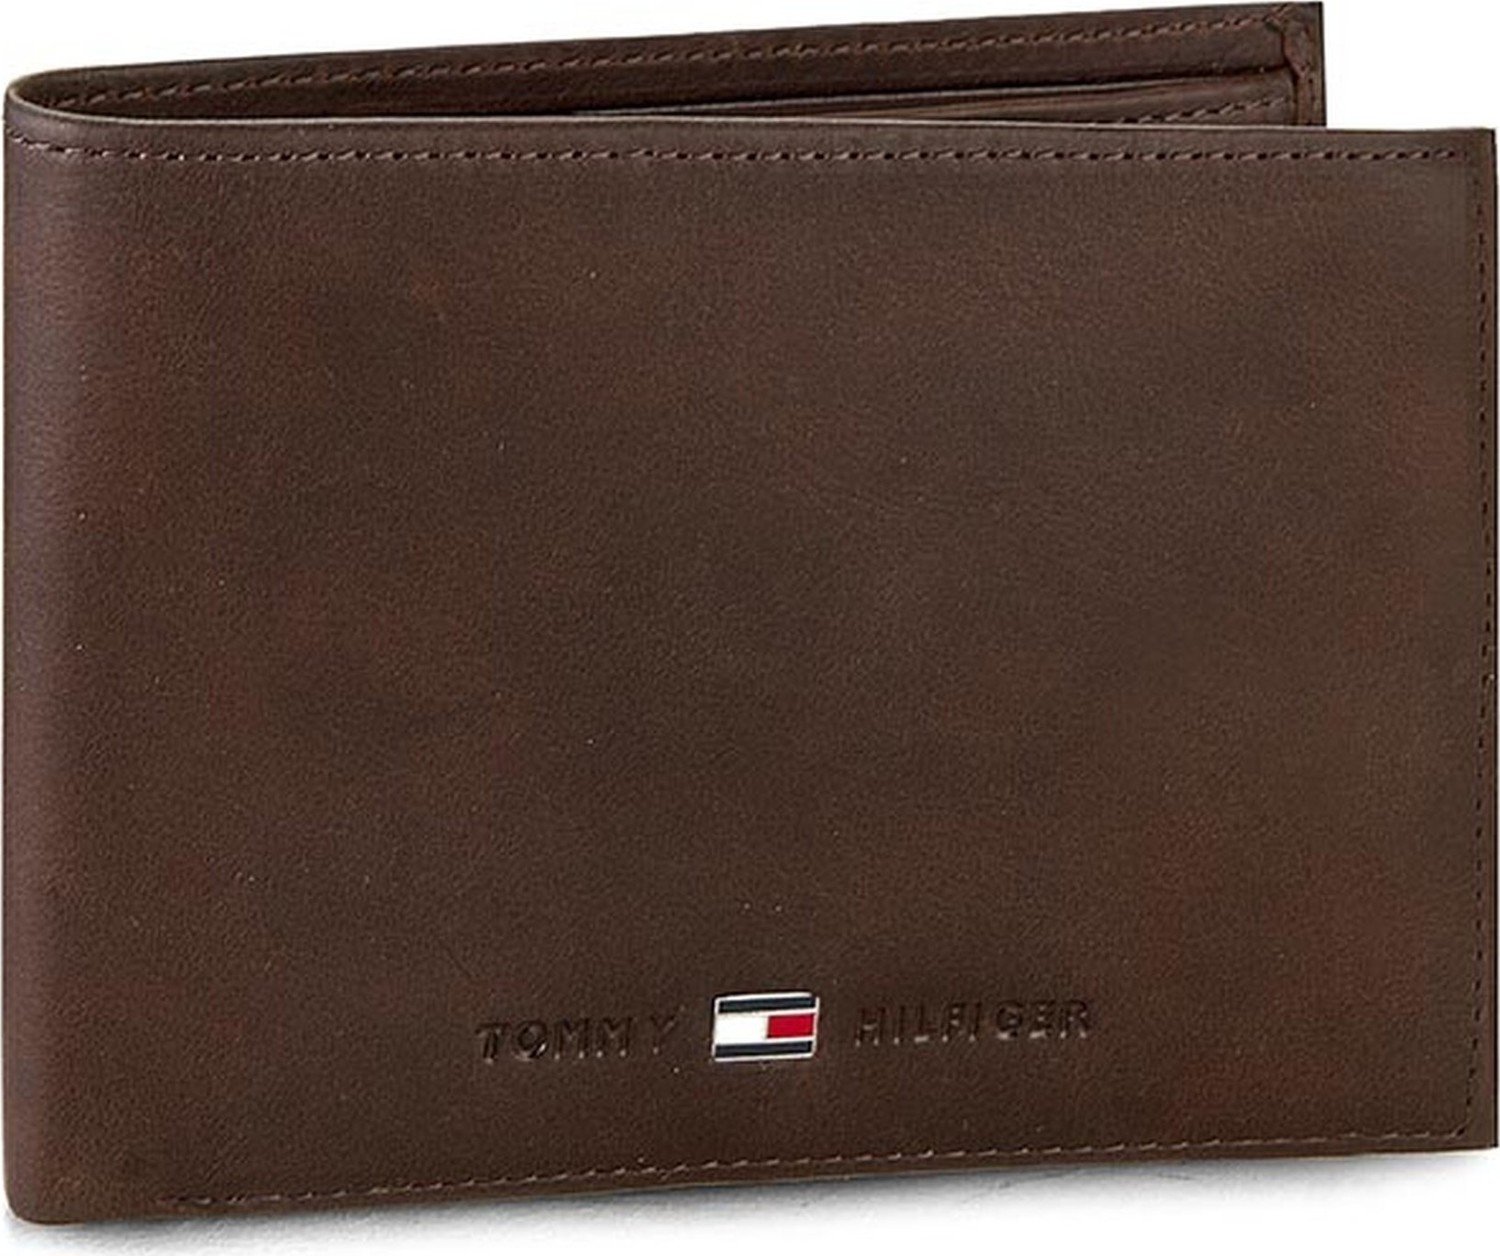 Velká pánská peněženka Tommy Hilfiger Johnson Cc And Coin Pocket AM0AM00659 41